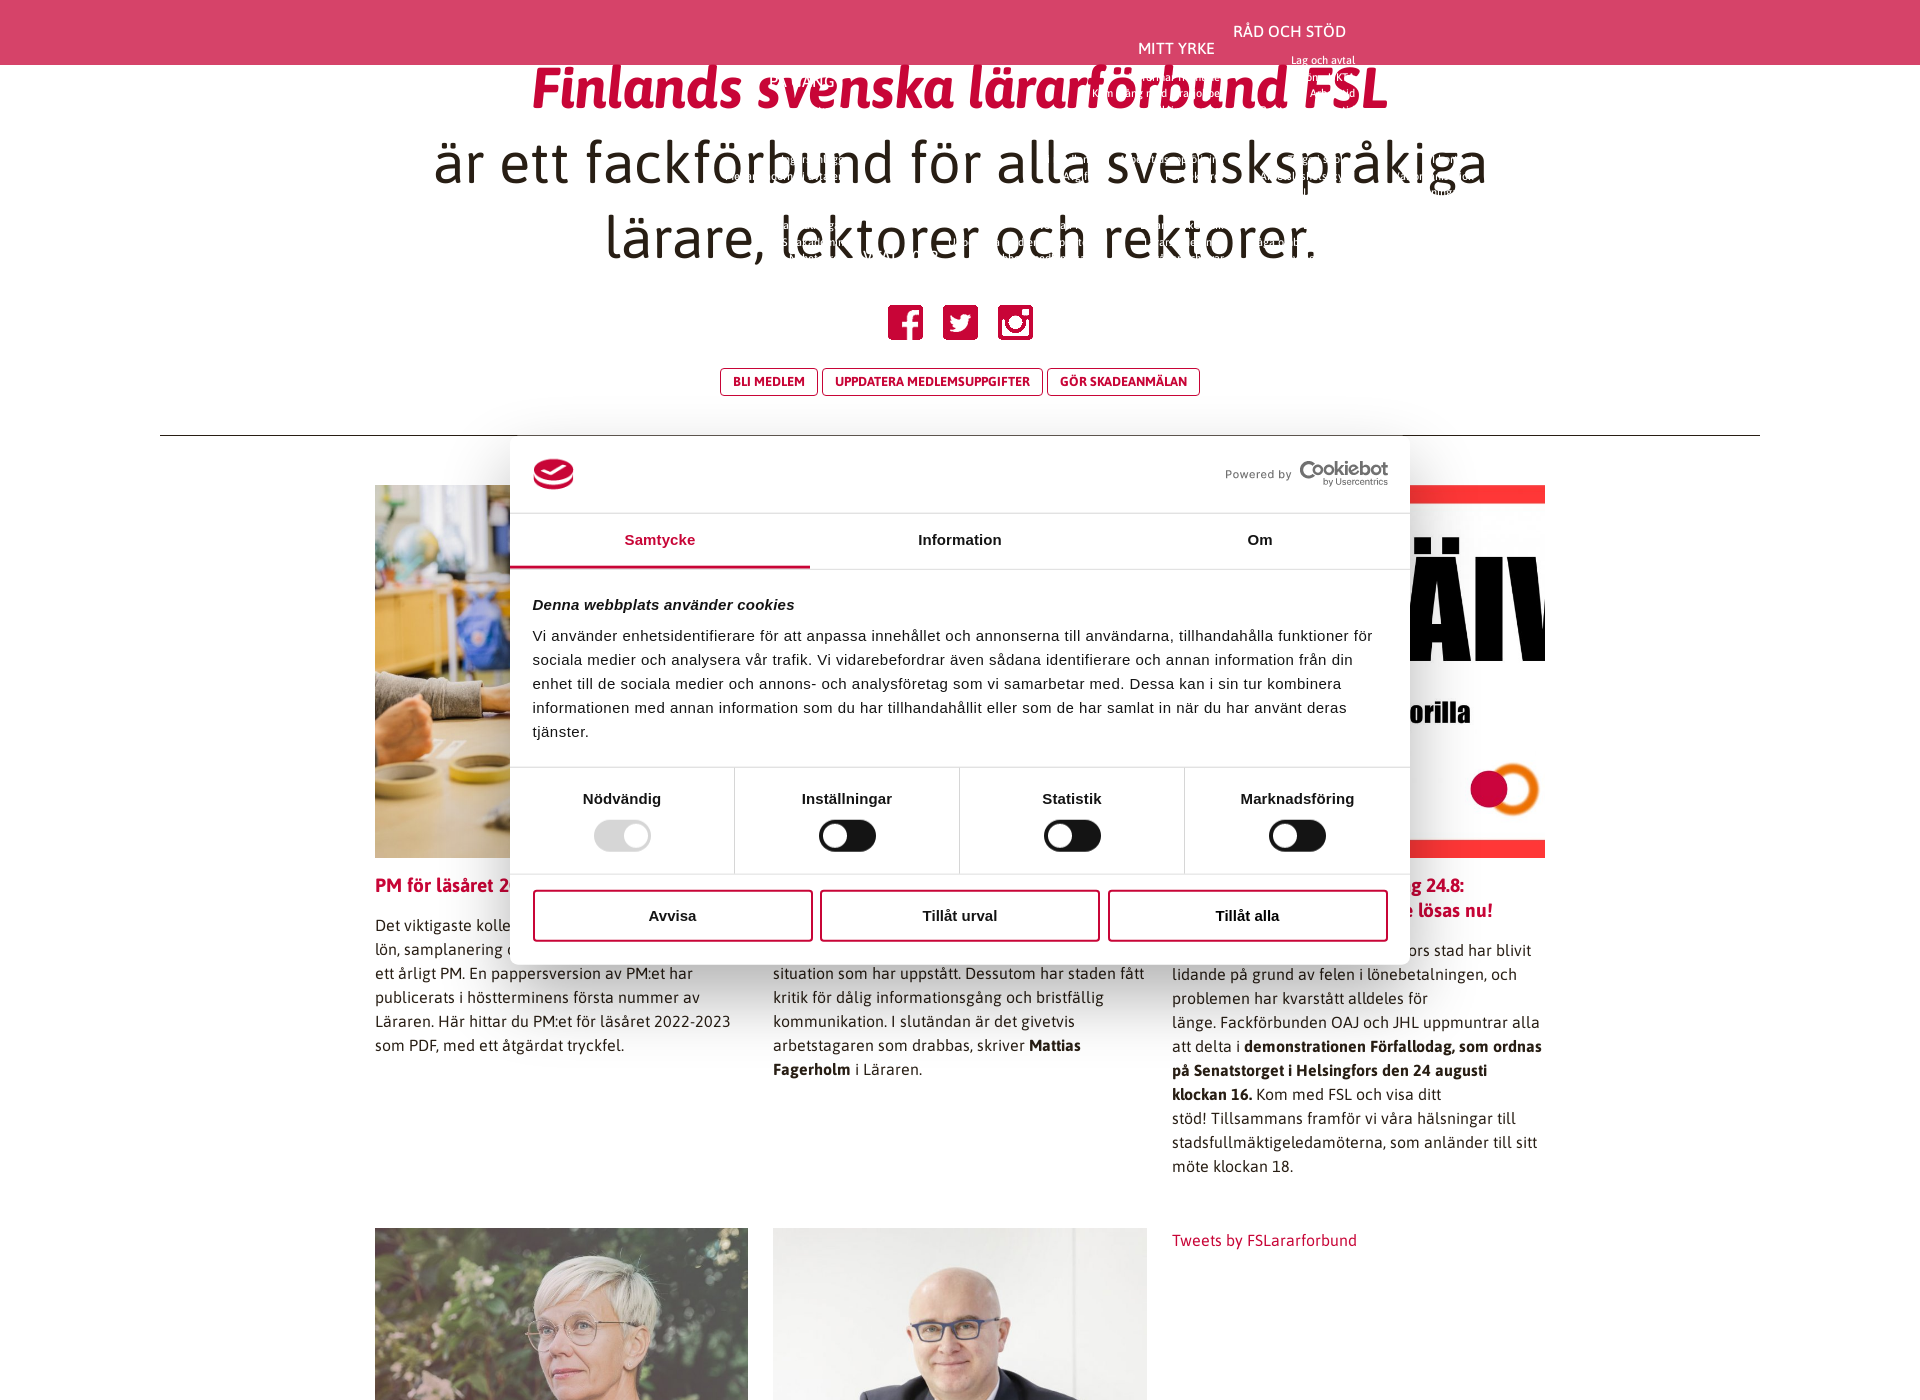 Näyttökuva lararforbundet.fi